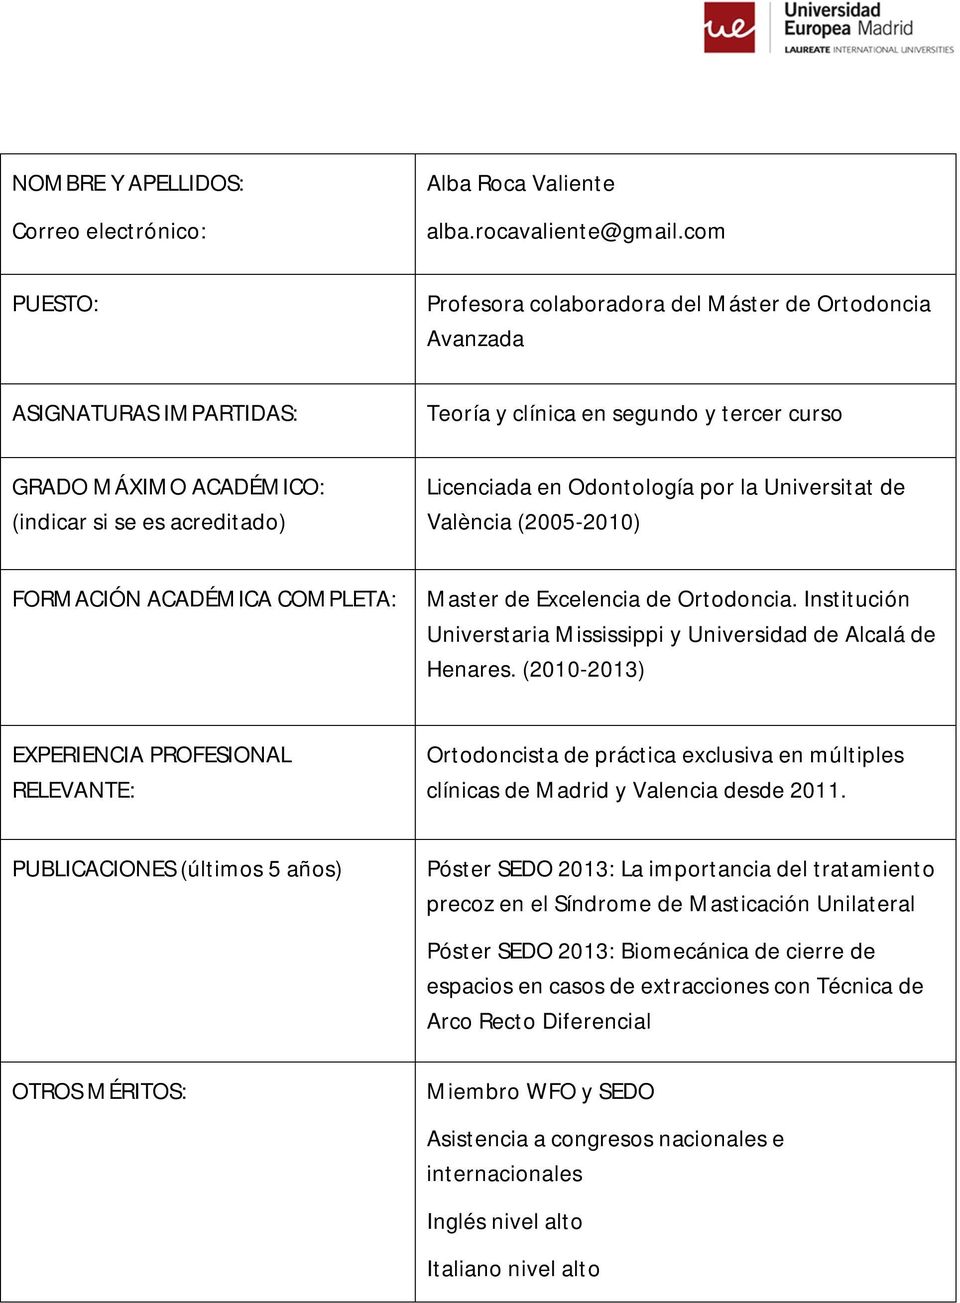 Odontología por la Universitat de València (2005-2010) FORMACIÓN ACADÉMICA Master de Excelencia de Ortodoncia. Institución Universtaria Mississippi y Universidad de Alcalá de Henares.